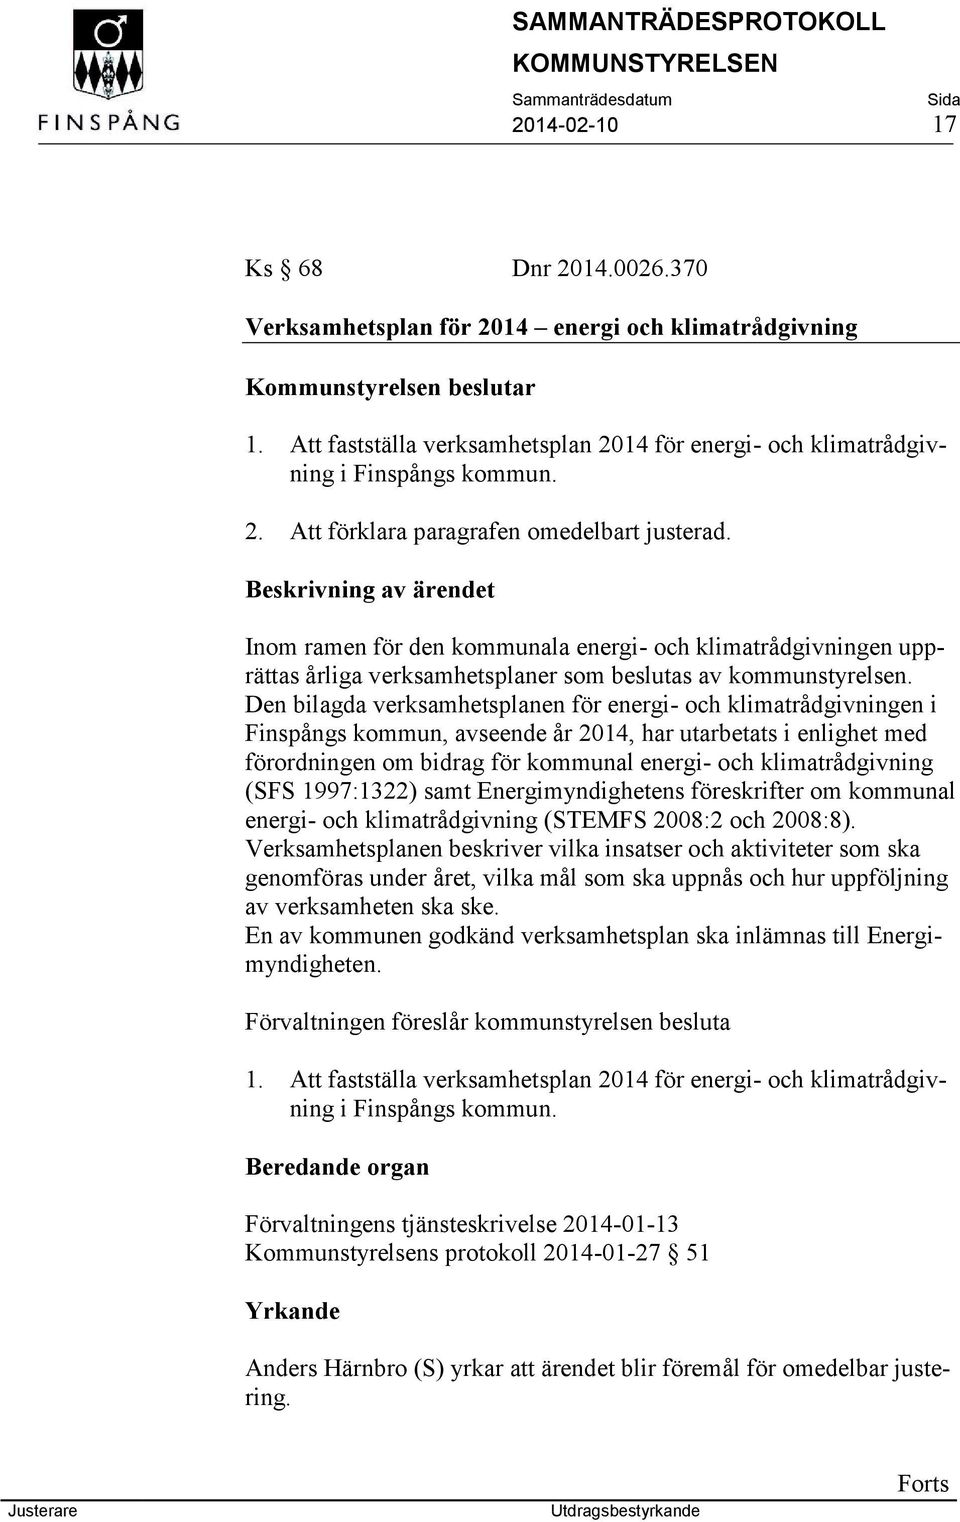 Den bilagda verksamhetsplanen för energi- och klimatrådgivningen i Finspångs kommun, avseende år 2014, har utarbetats i enlighet med förordningen om bidrag för kommunal energi- och klimatrådgivning